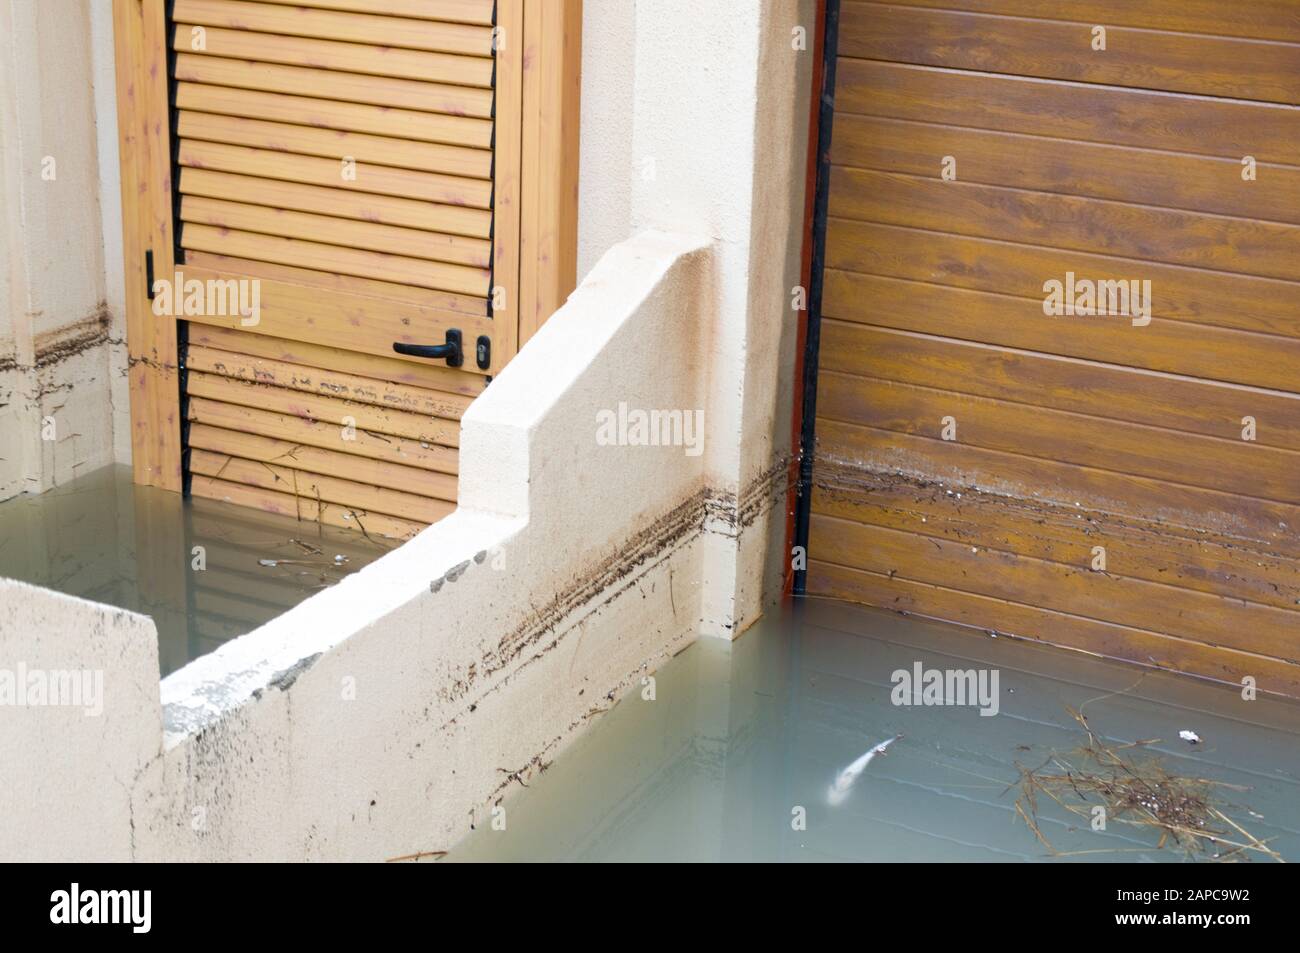 Tavernes de la Valldigna, Valencia, Spagna, 22 gennaio 2020. L'acqua di mare inonda le strade della città, un pesce morto alla porta di una casa. Credit: Salva Garrigues)/ Alamy Live News Foto Stock